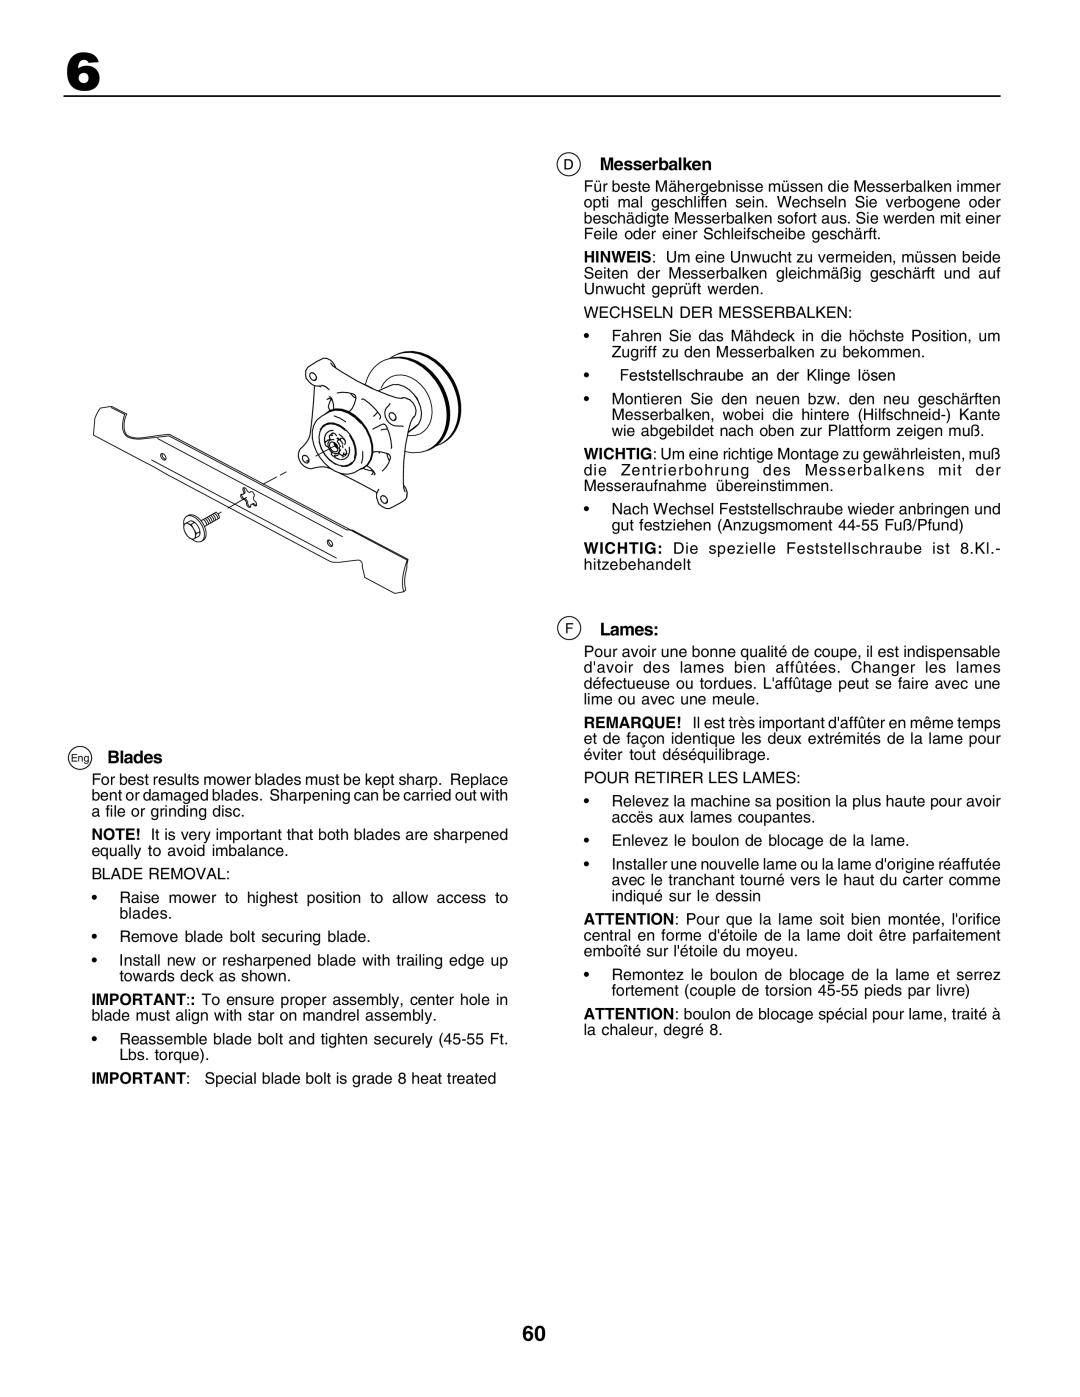 Husqvarna GTH250 instruction manual Eng Blades, Messerbalken, F Lames 